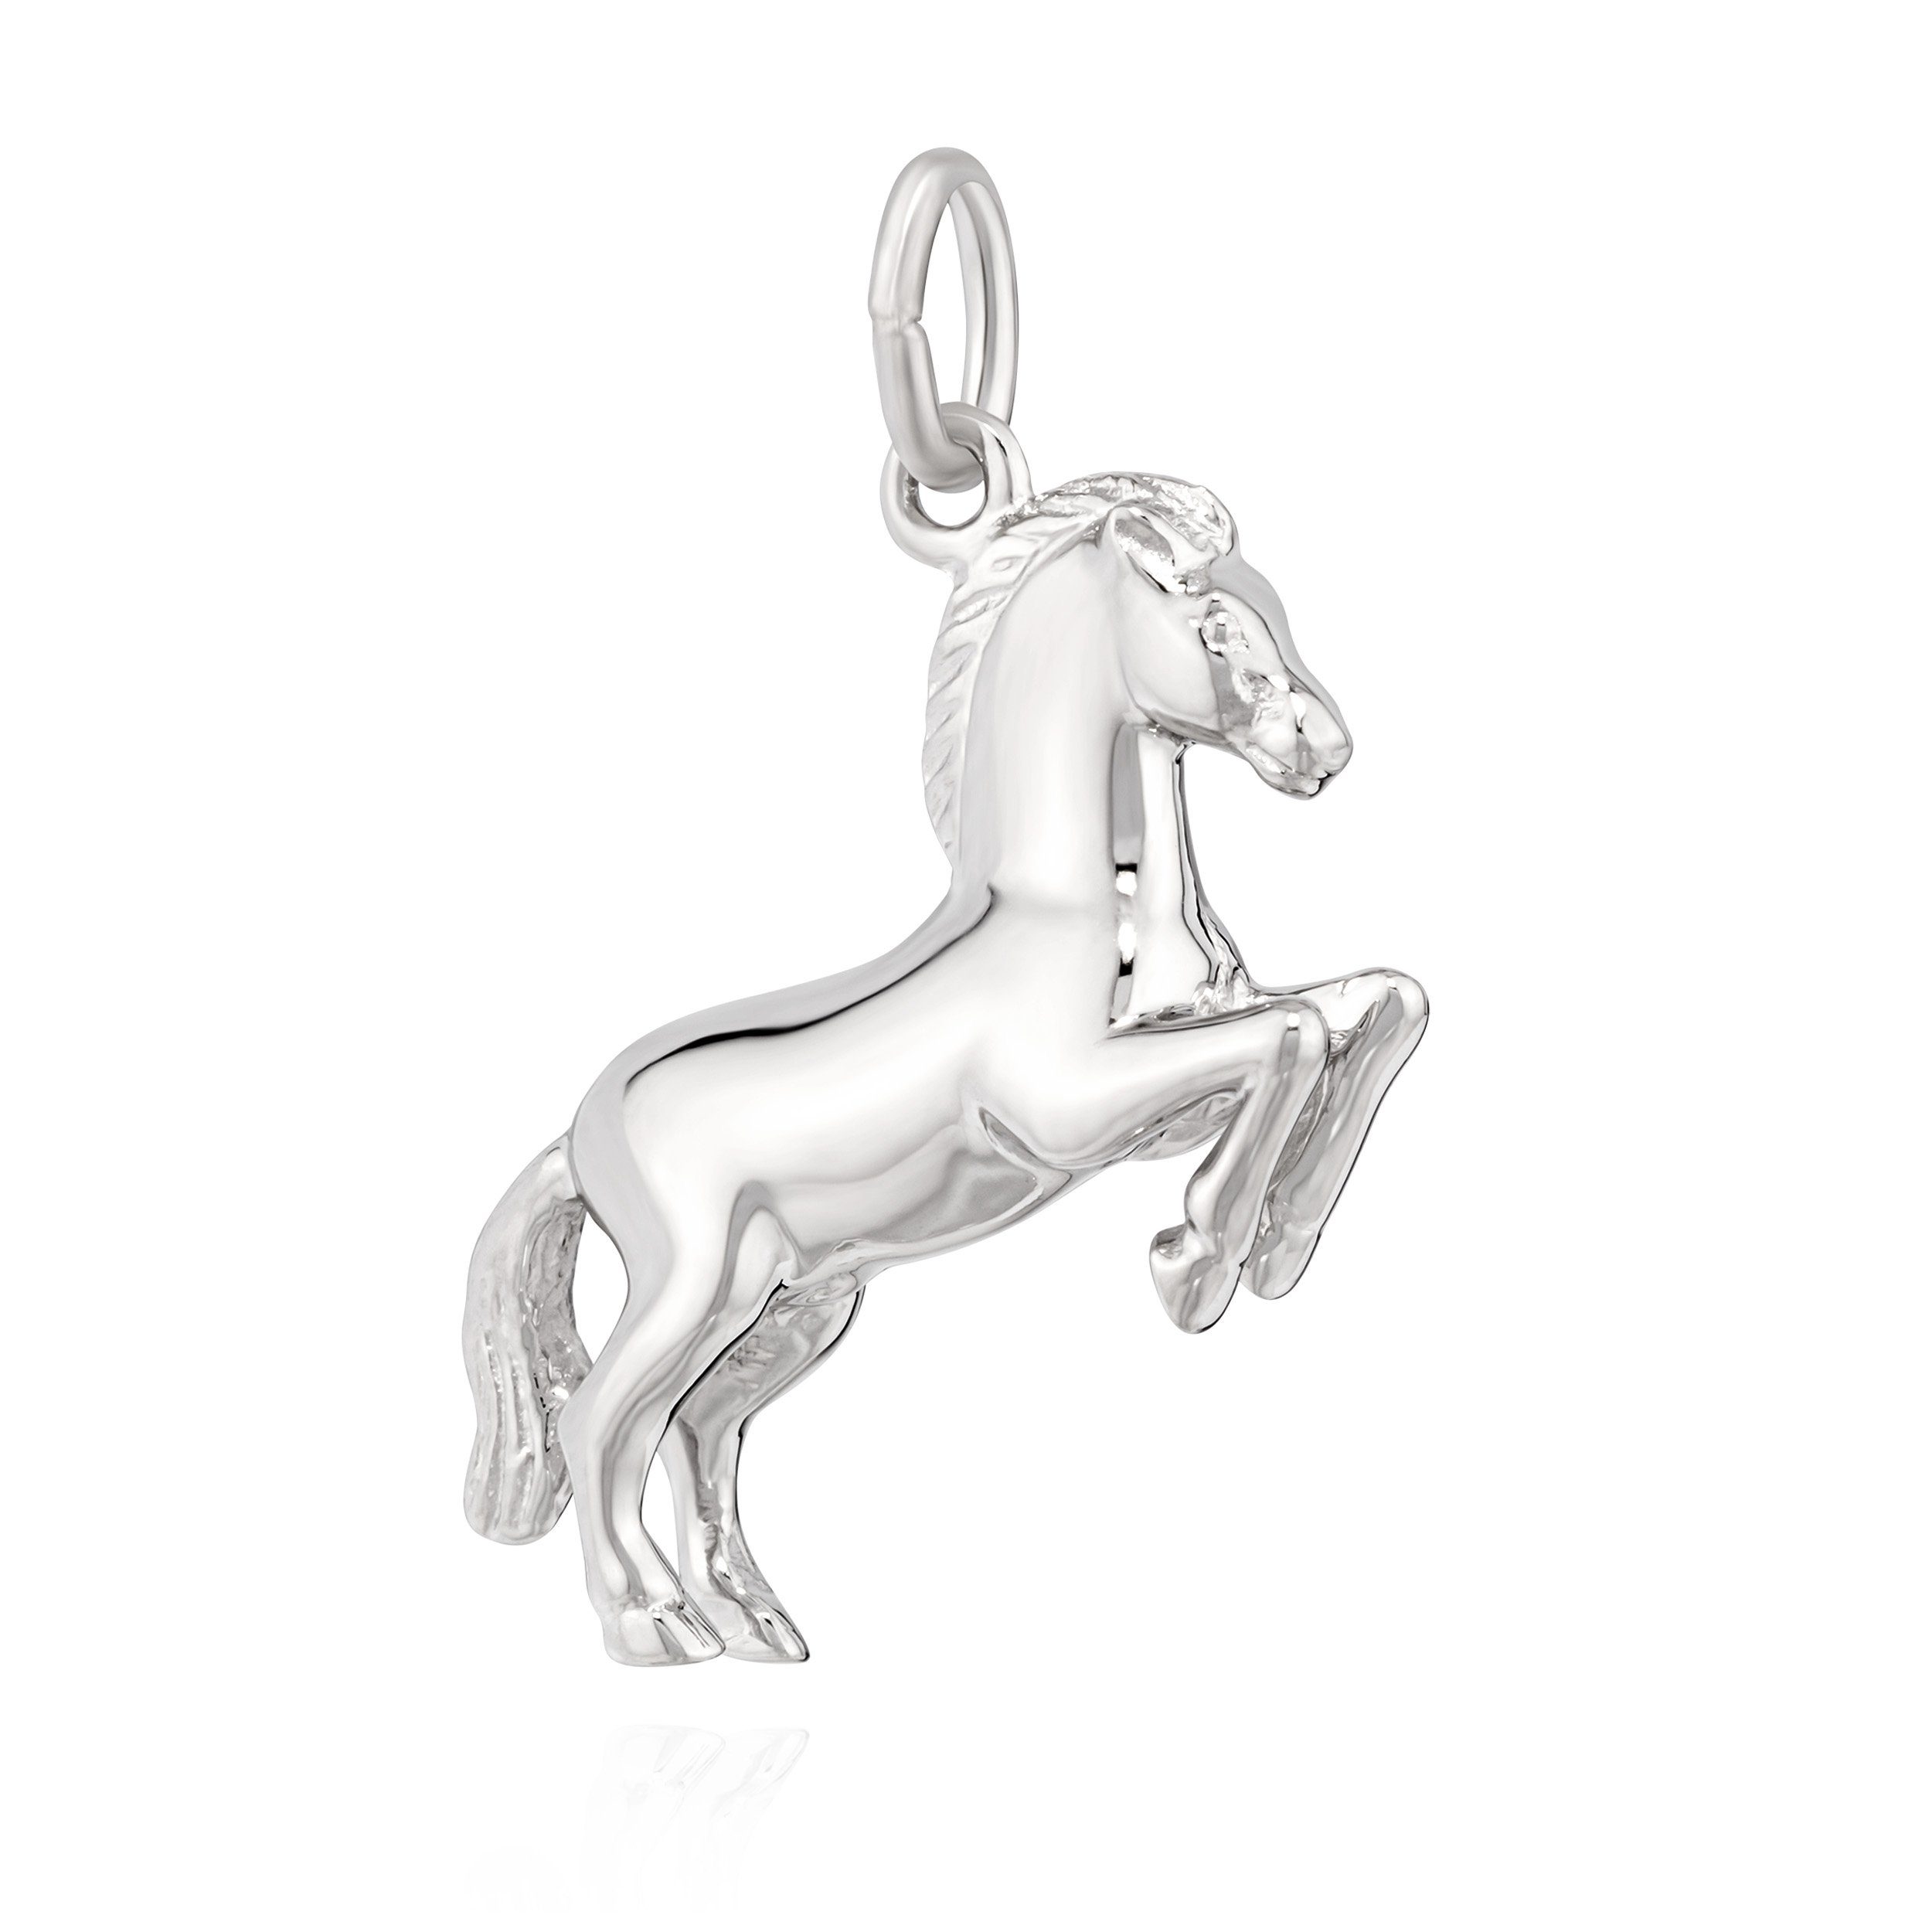 Neue Ware zu günstigen Preisen NKlaus Kettenanhänger anlaufg 3D glanz Pferd Kettenanhänger Sprung im 925 Silber 24mm Hengst